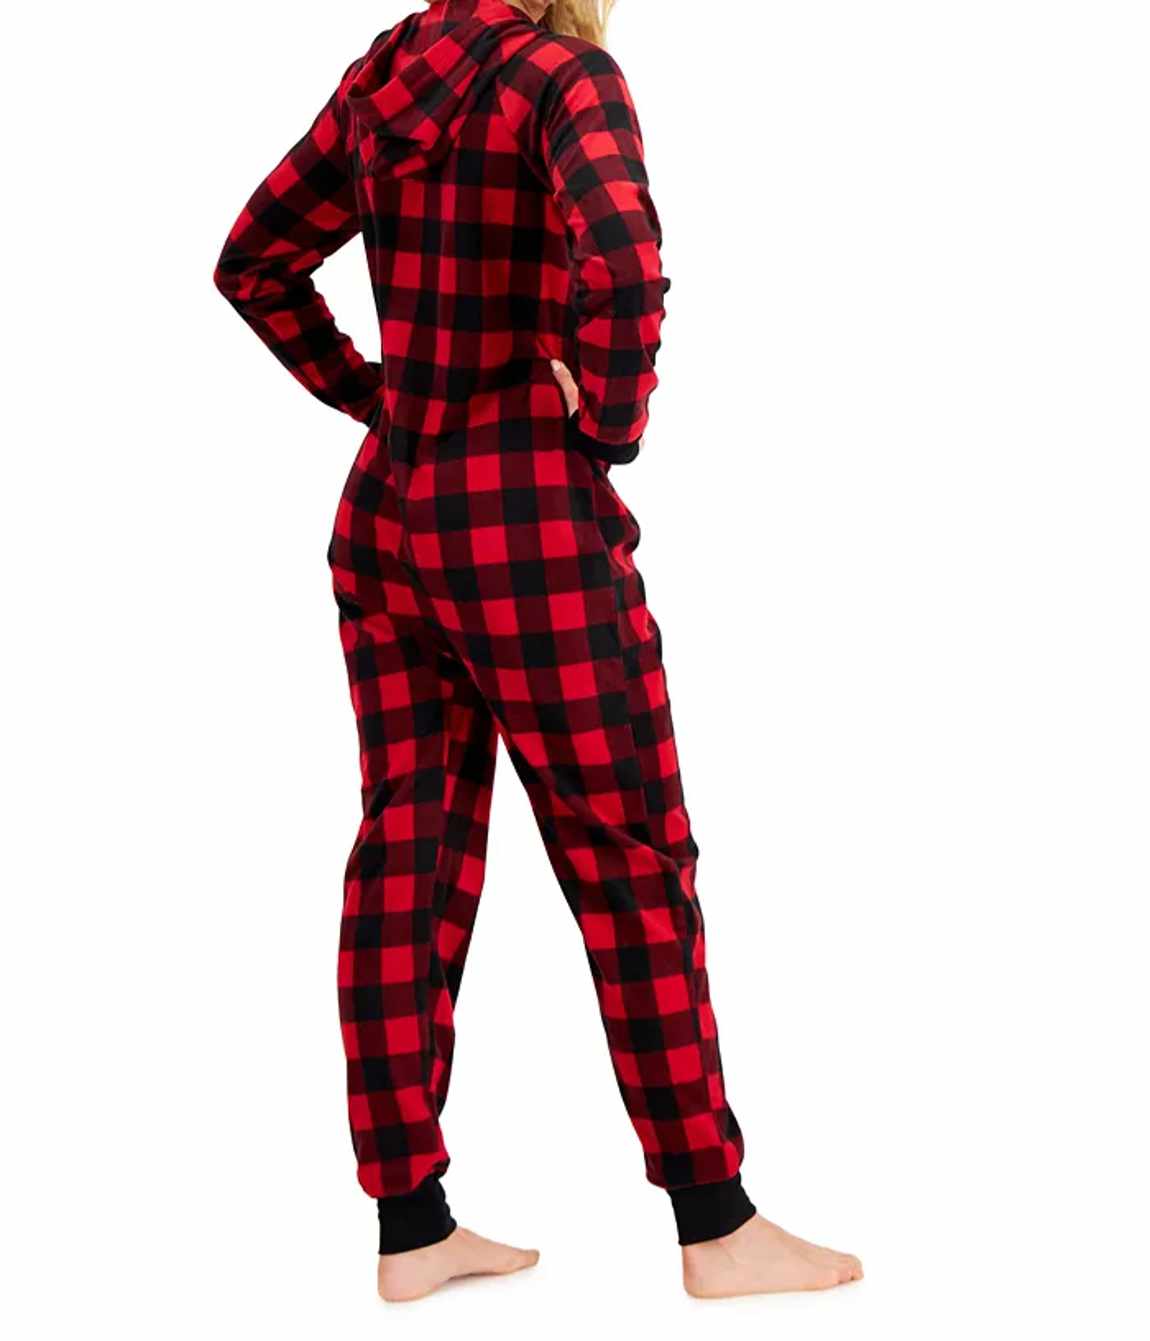 Family Pajamas Big Kids Girls Matching 1 Piece Red Check Printed Pajamas Onsie